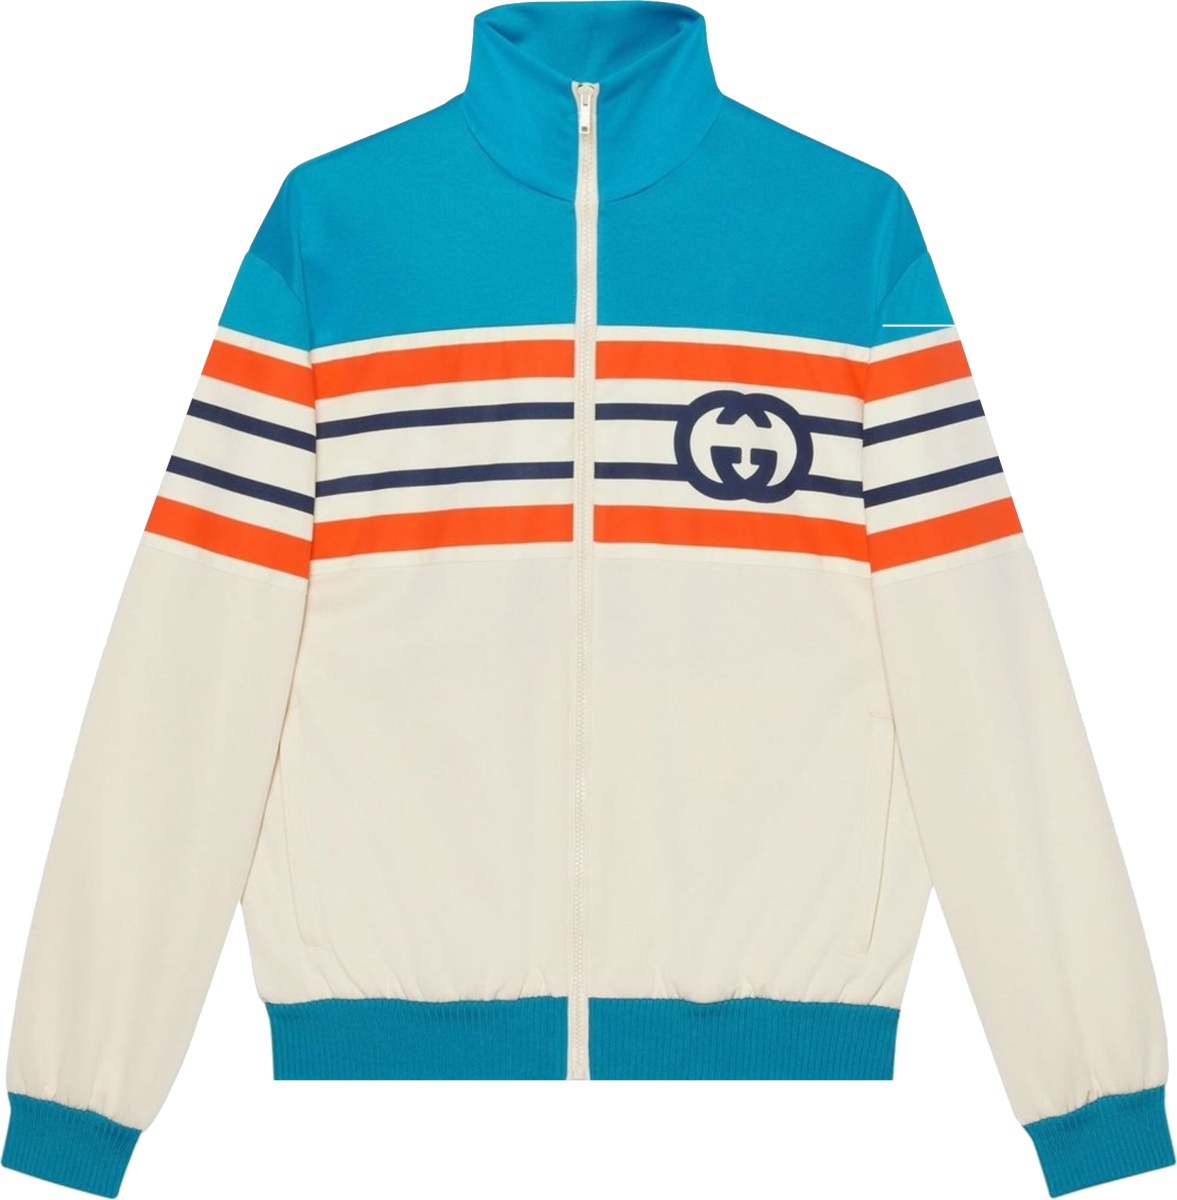 Gucci Turquoise, Orange, & White Track Jacket | INC STYLE